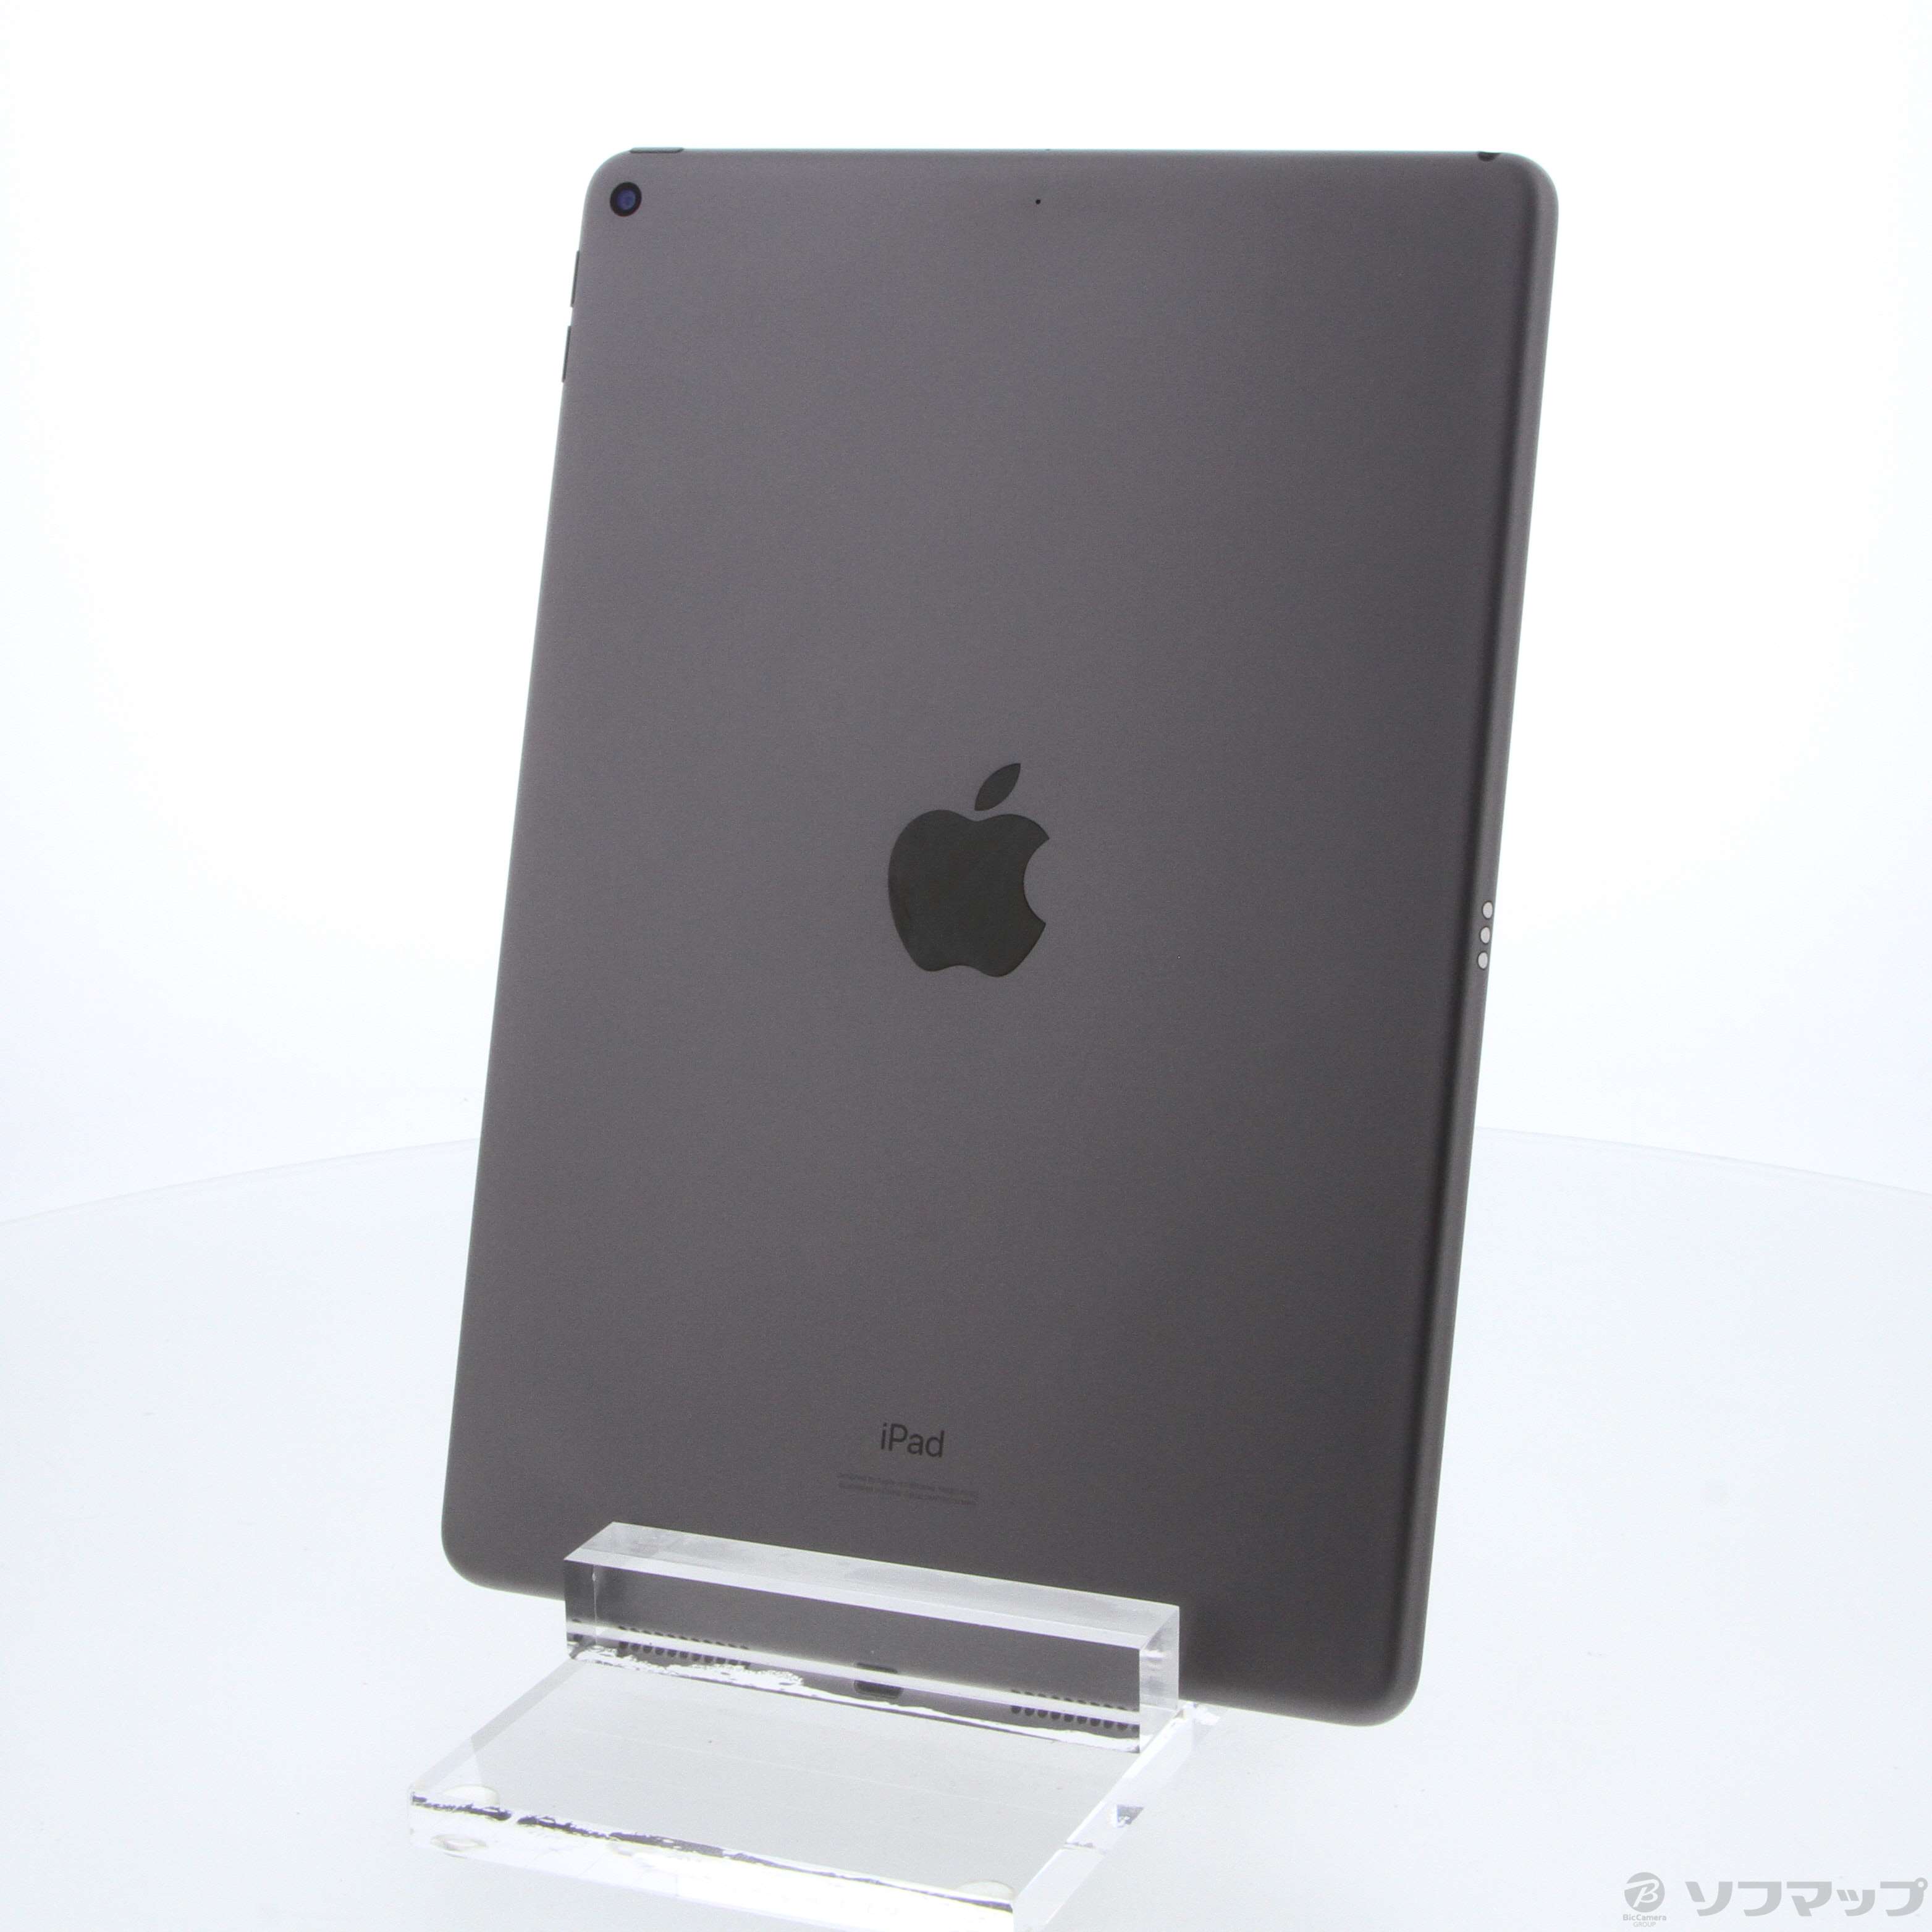 標準価格ジャンク MUUJ2J/A iPad Air Wi-Fi 64GB スペースグレイ iPad本体